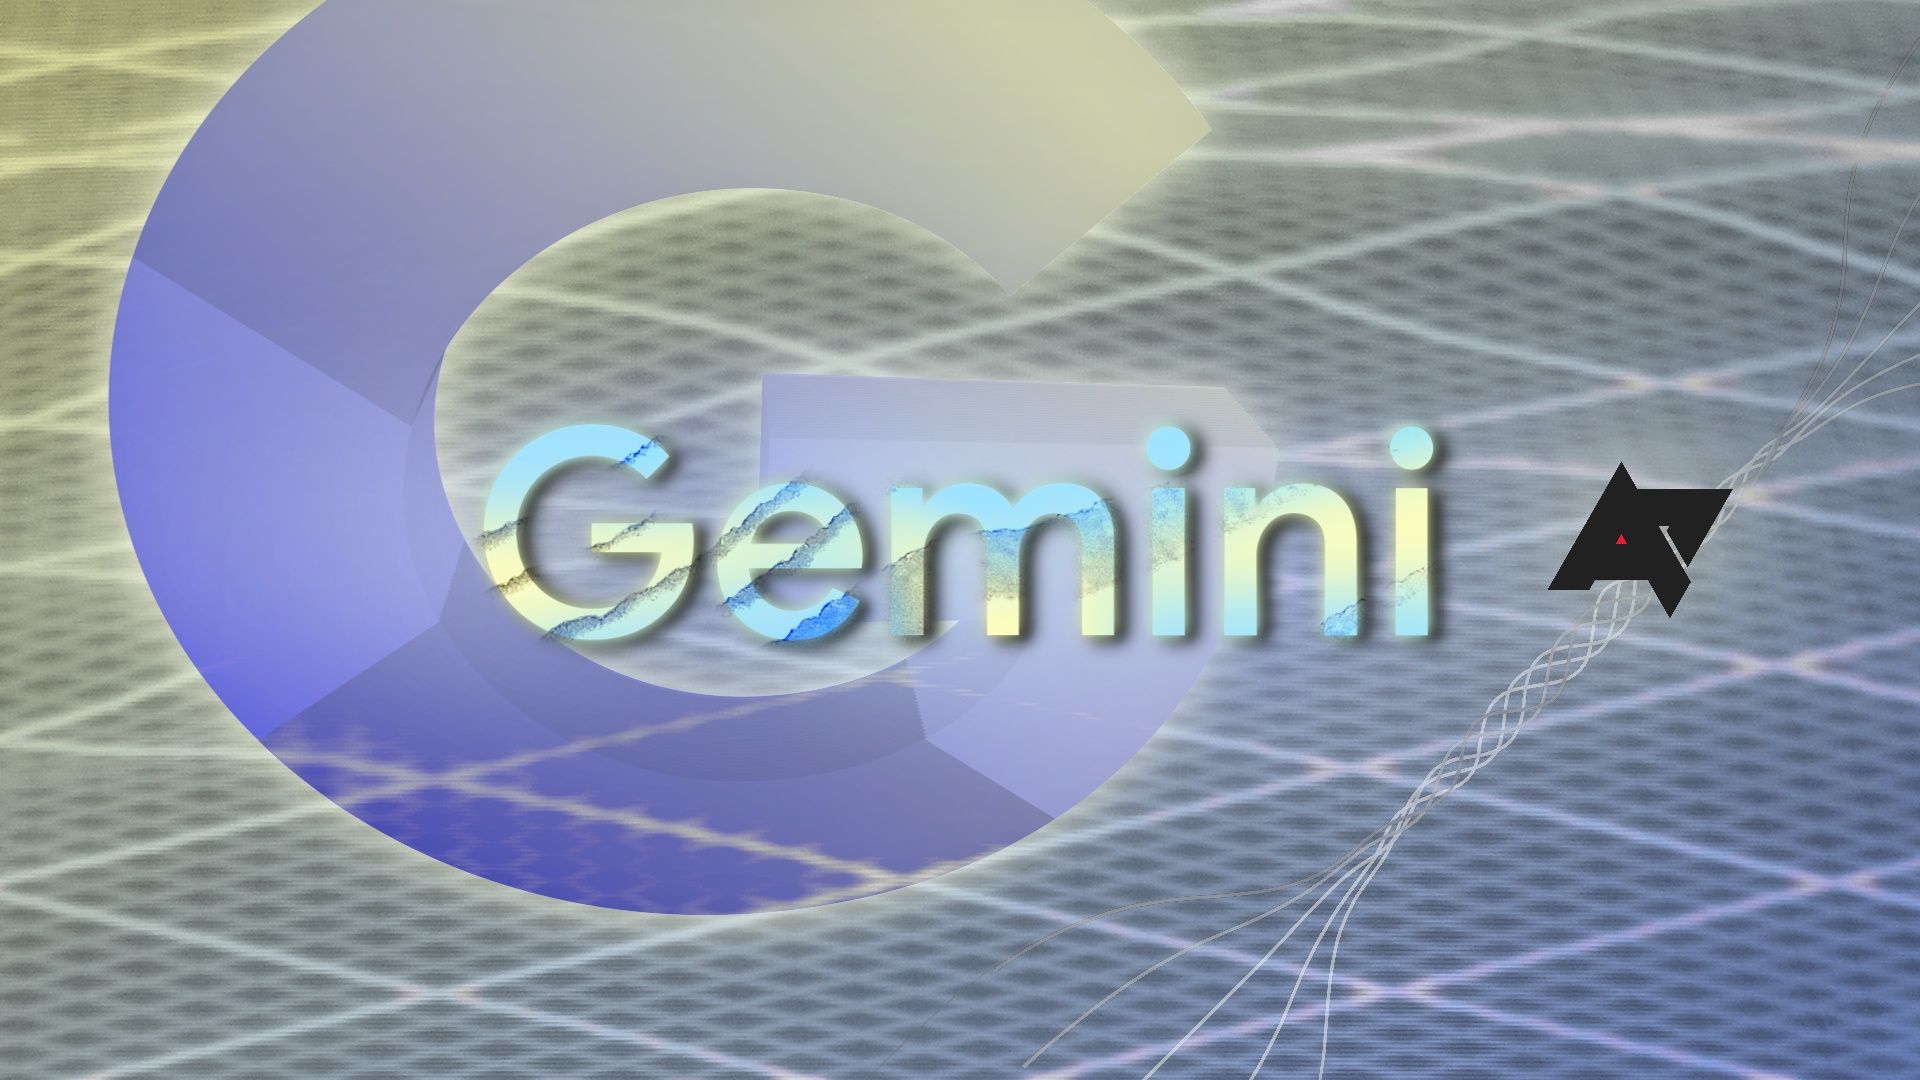 Logotipo Gemini do Google em um fundo com o logotipo Google G